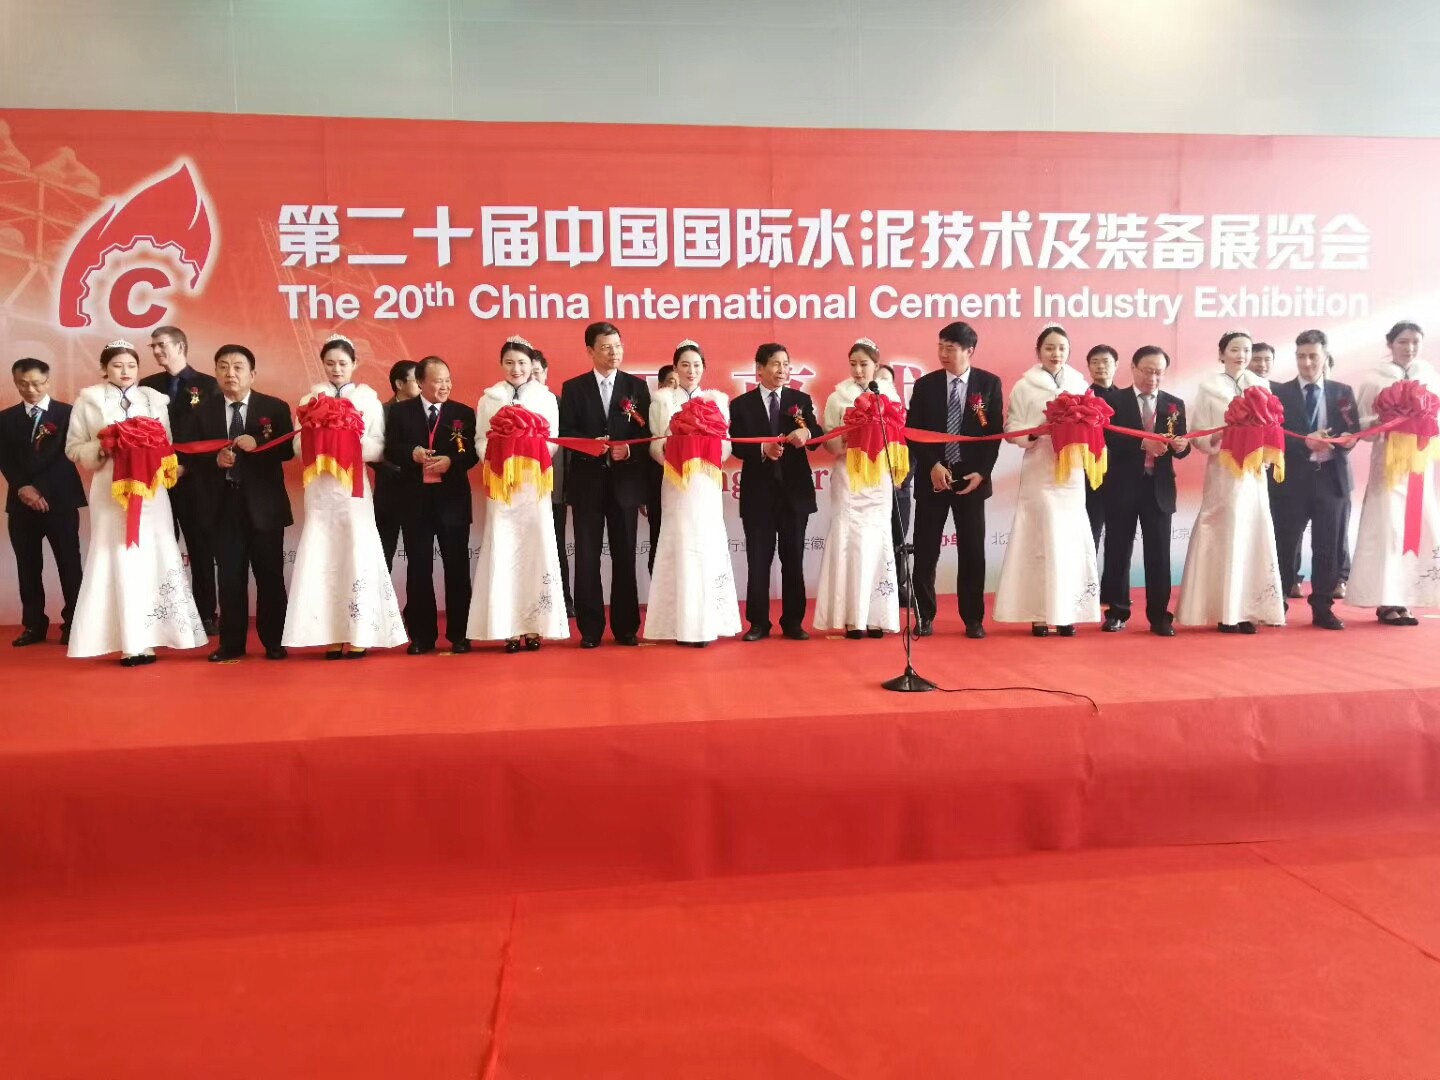 恩普特亮相第二十届中国国际水泥技术及装备展览会